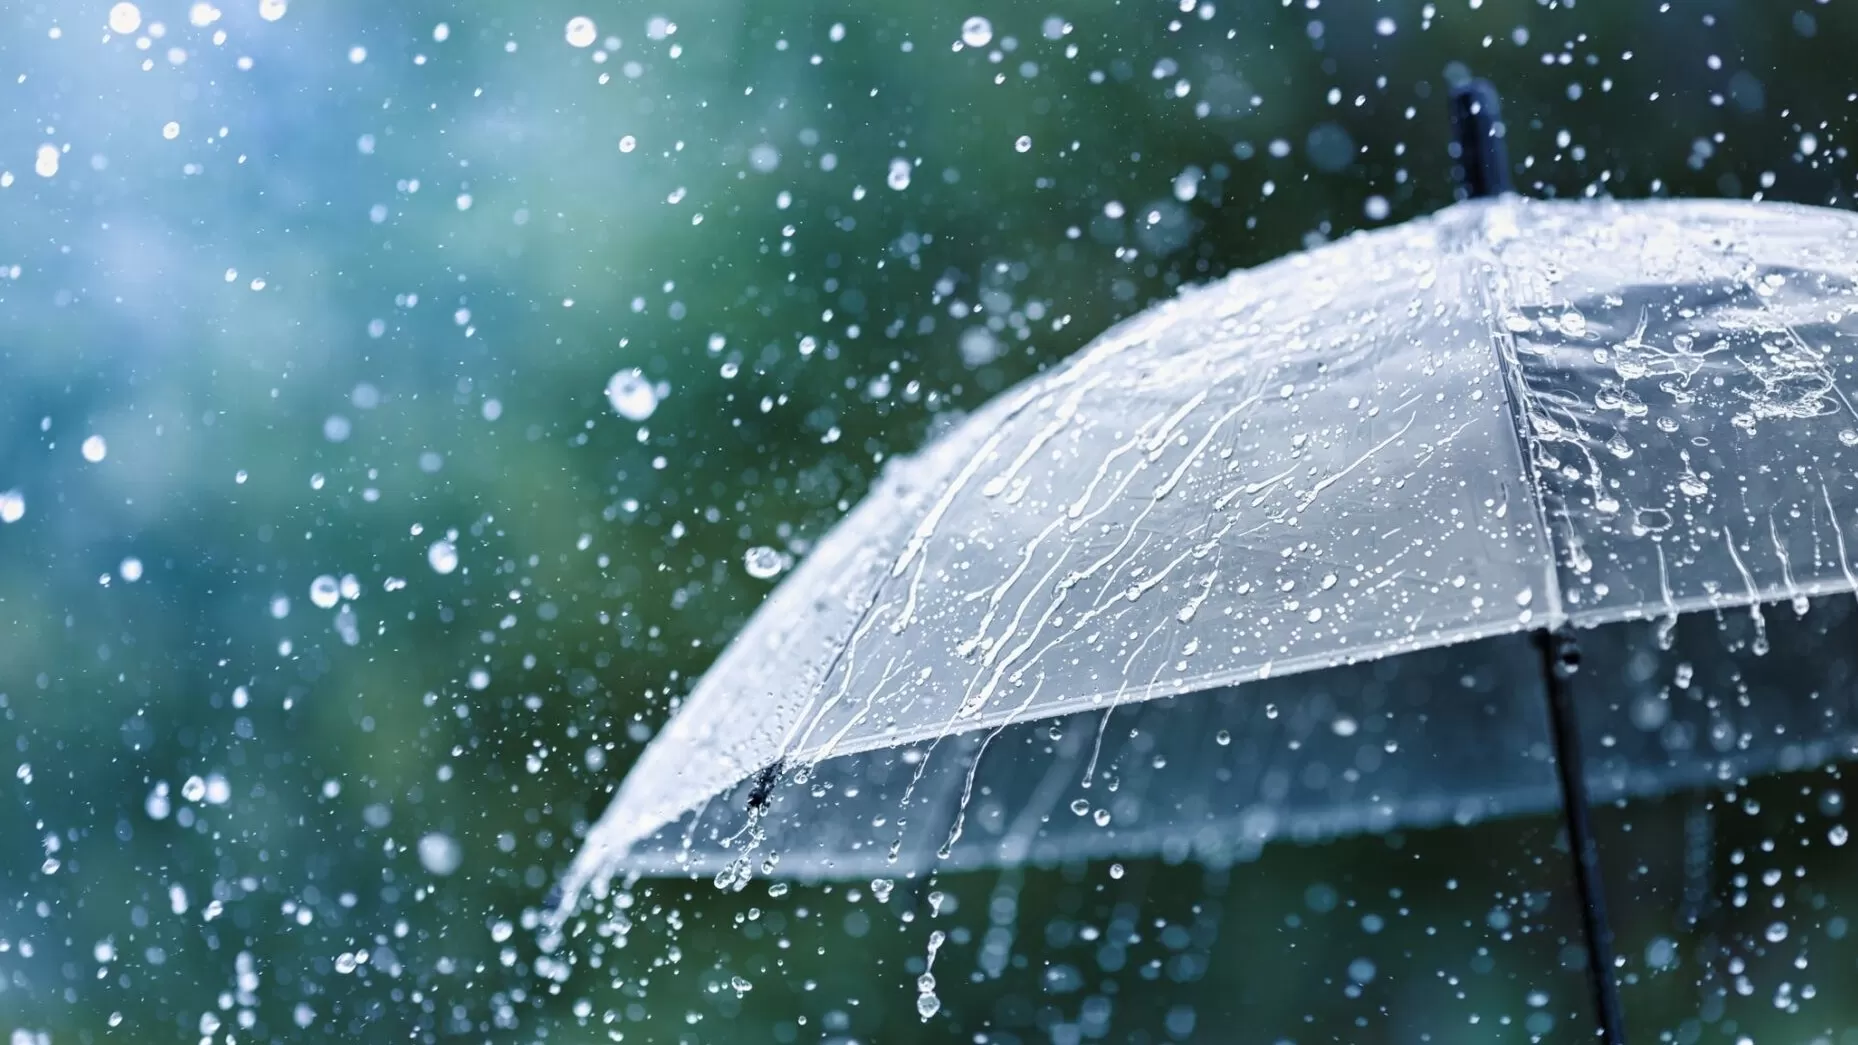 Անձրևանոցը չմոռանաք․ առաջիկա օրերի եղանակի տեսությունը